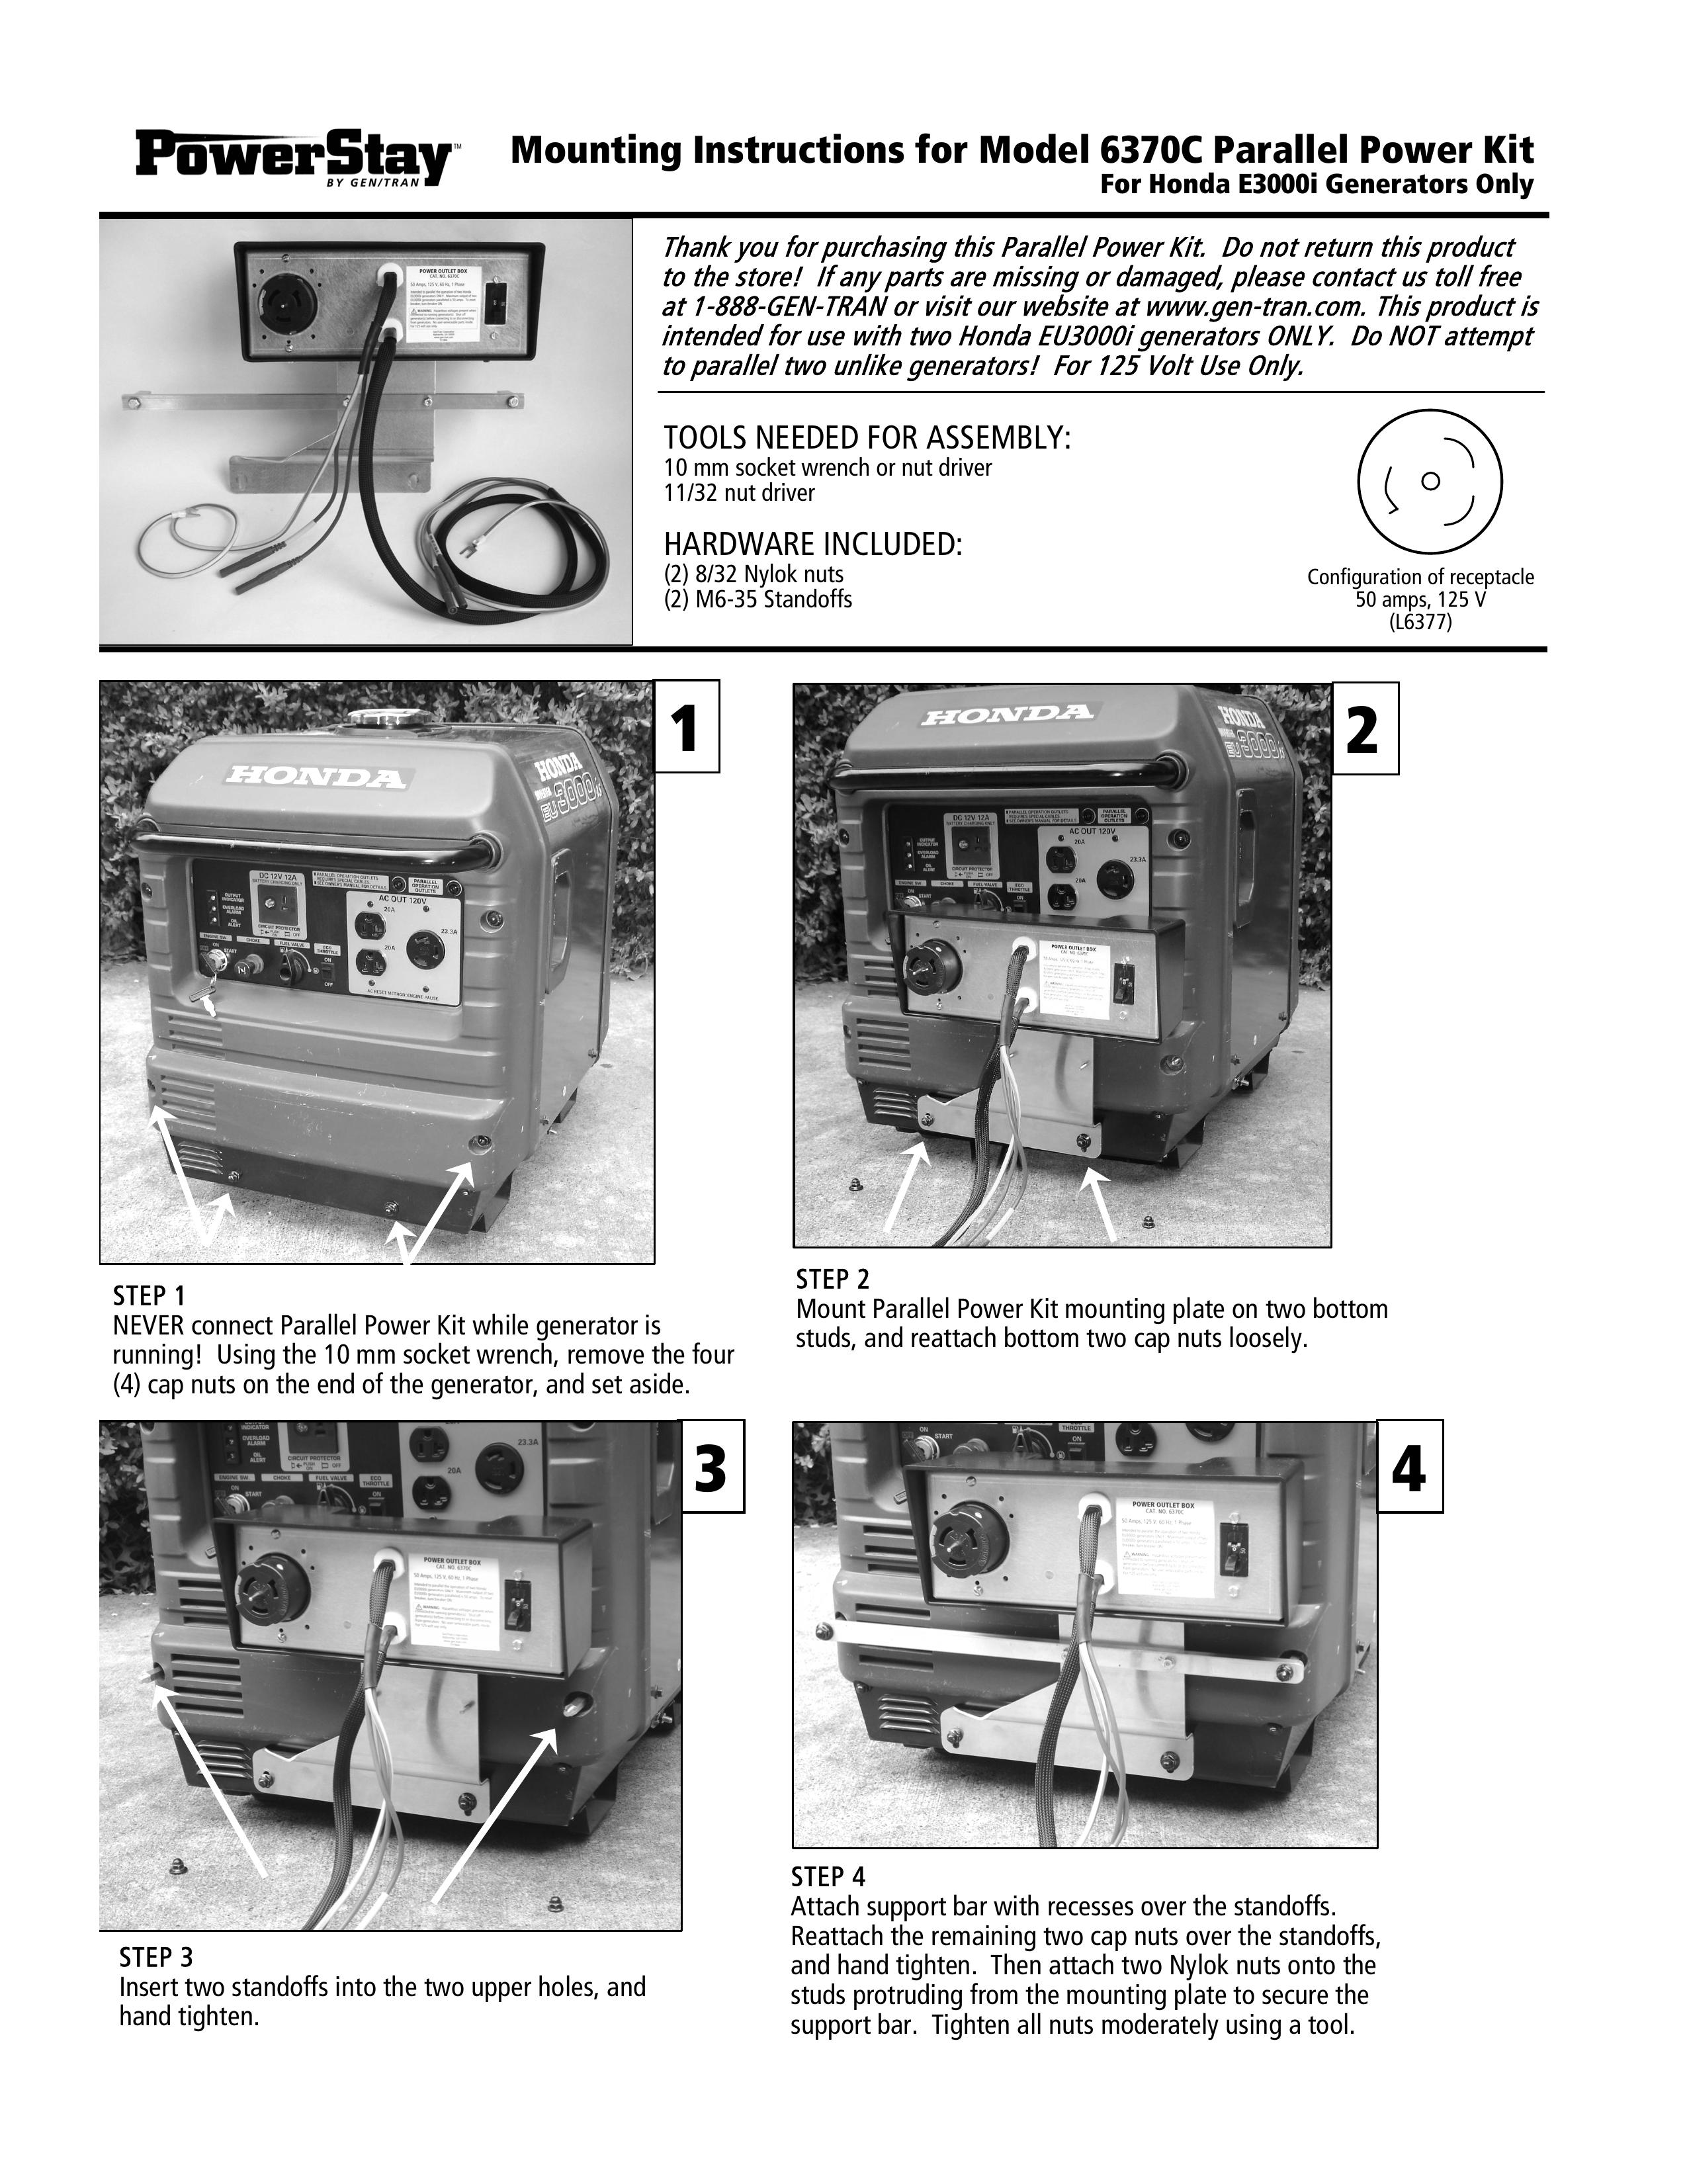 GenTran 6370C Portable Generator User Manual